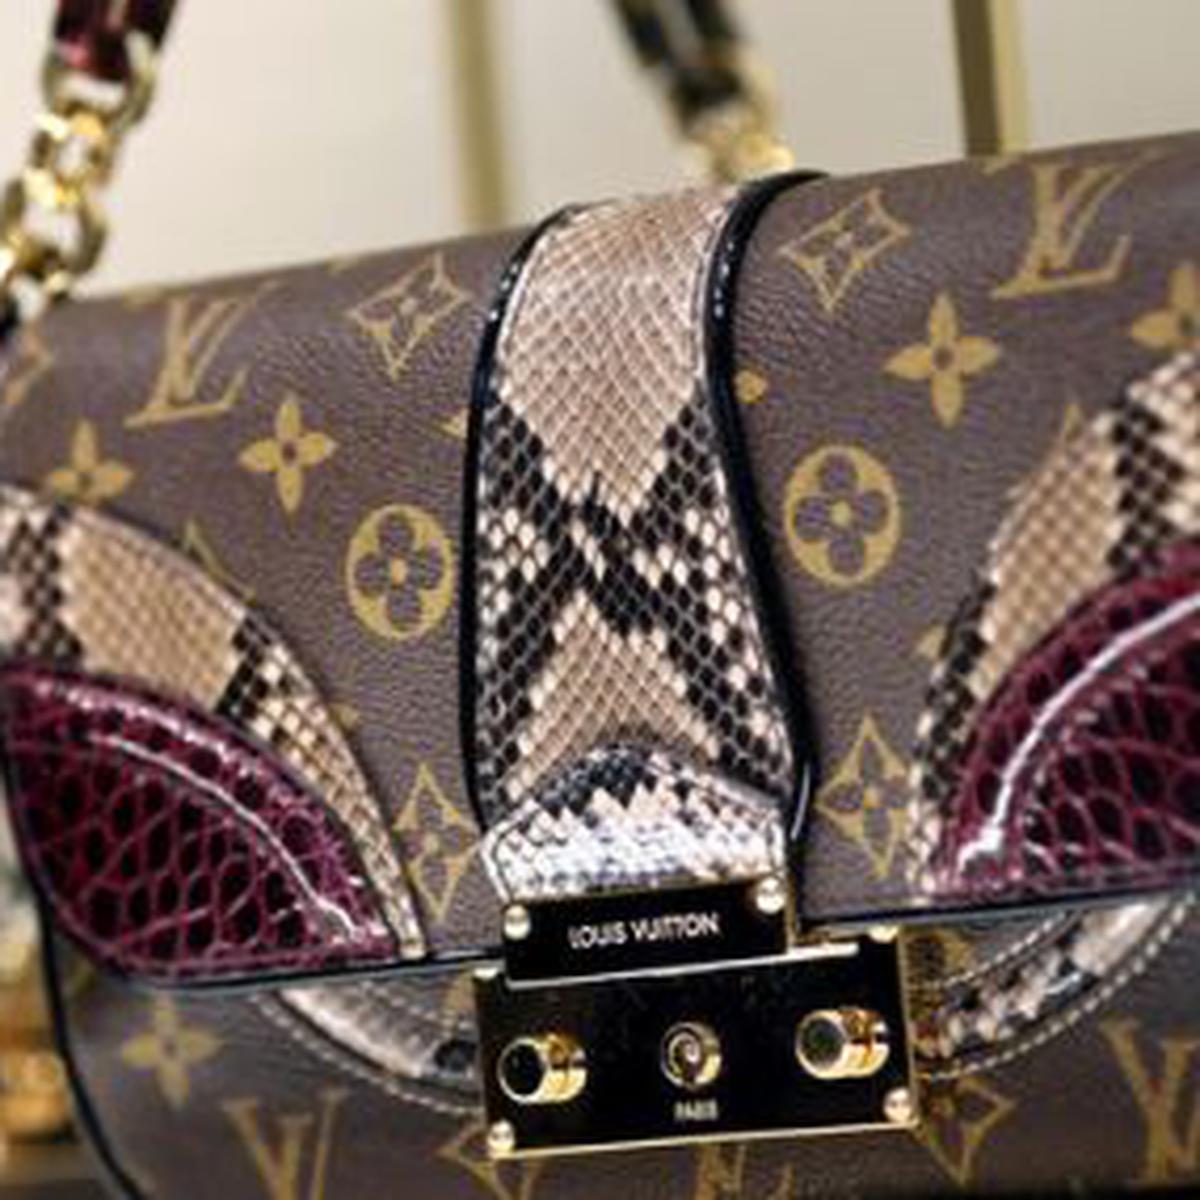 Louis Vuitton: La marca de lujo más valorizada, TENDENCIAS